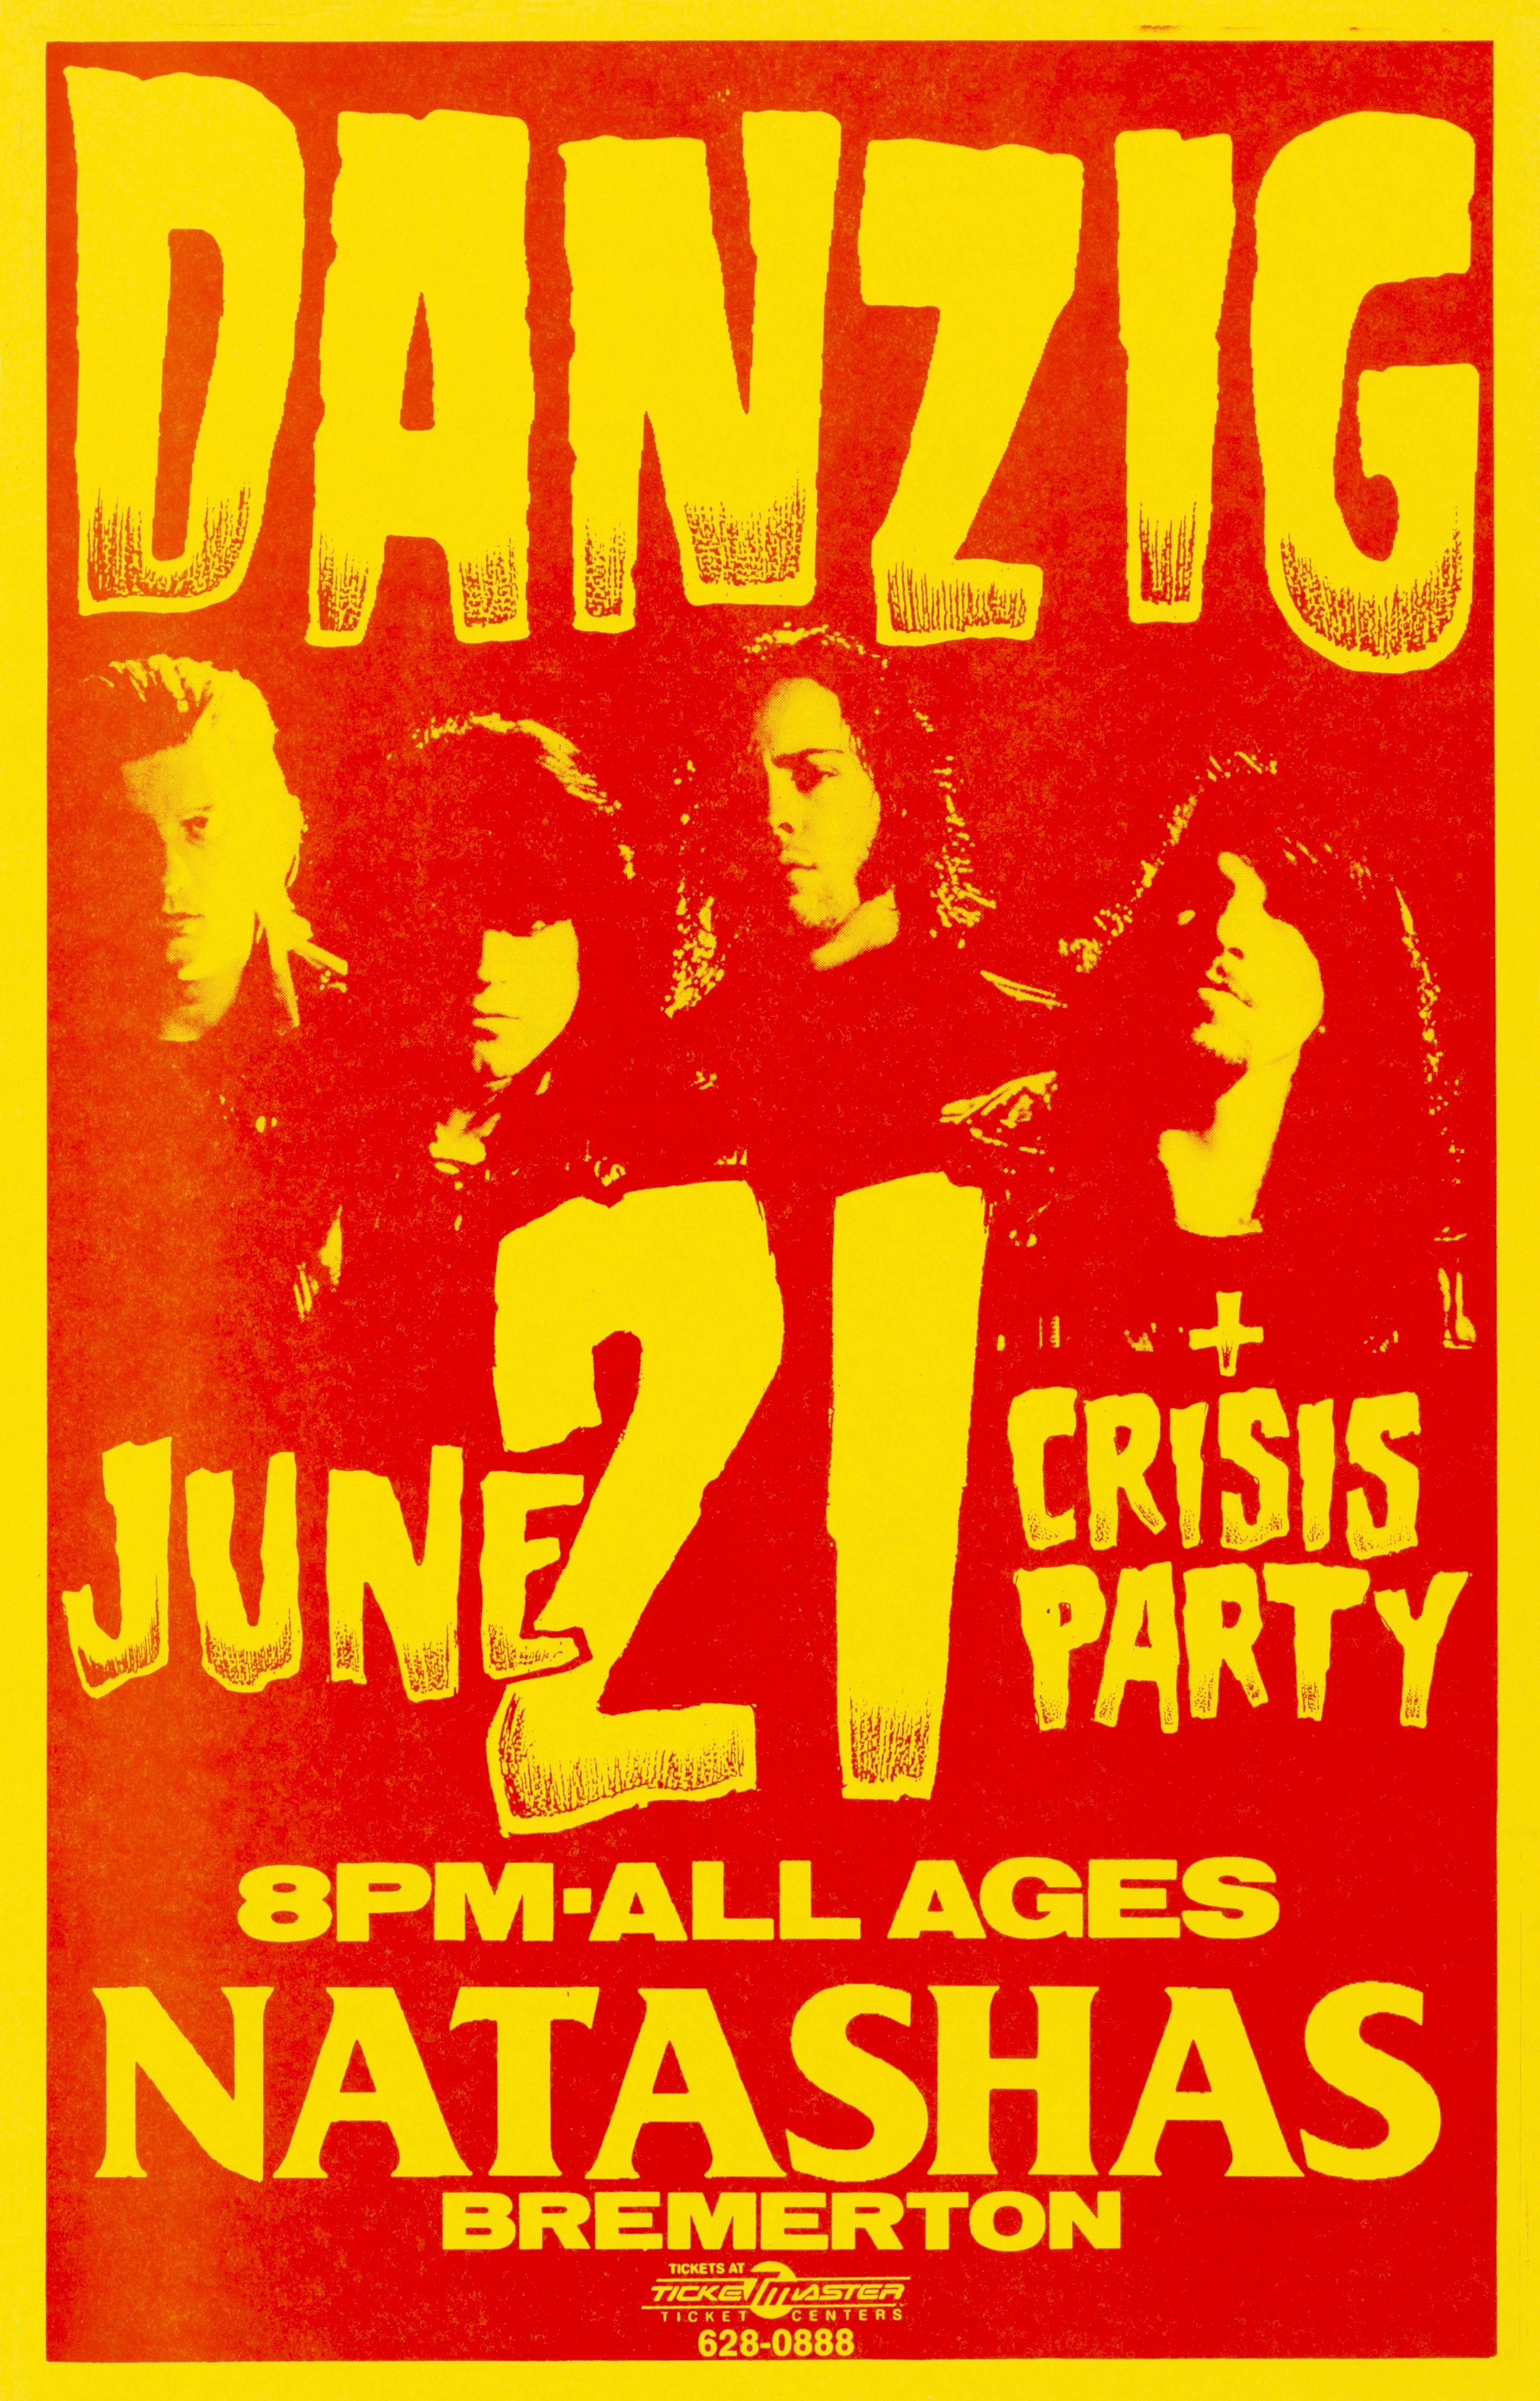 MXP-264.1 Danzig 1988 Natashas  Jun 21 Concert Poster